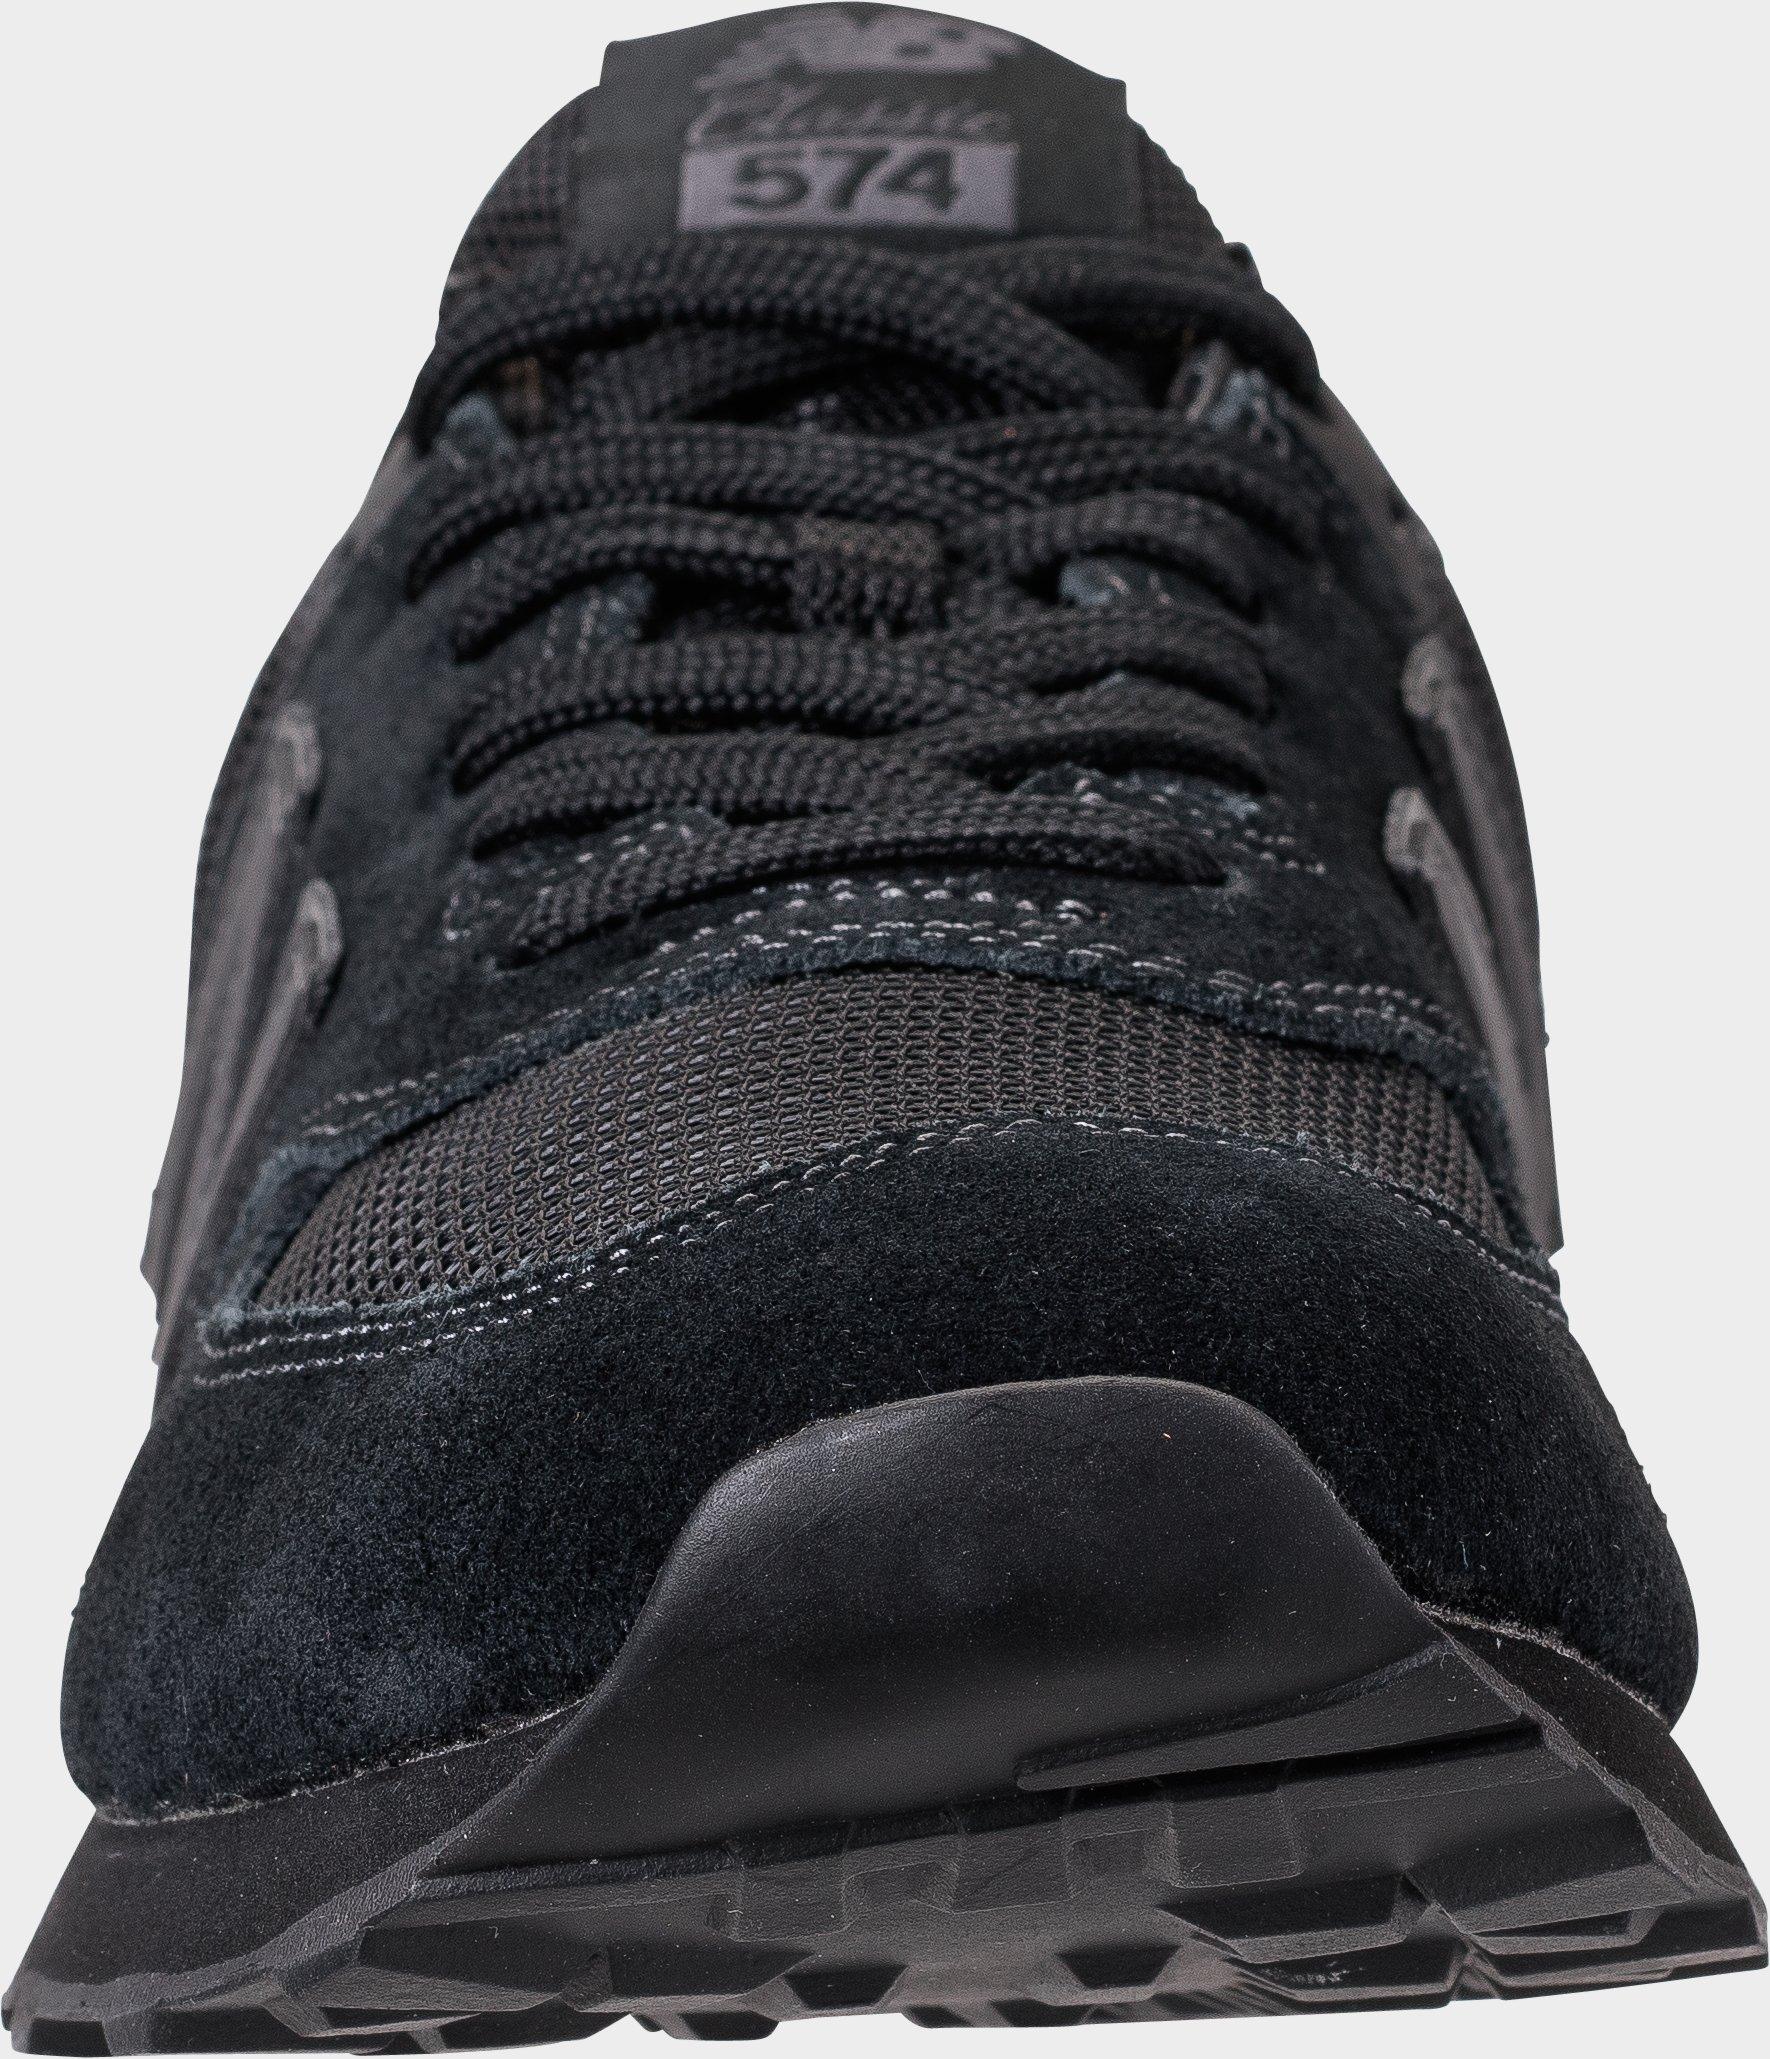 new balance 574 txe athletic shoe